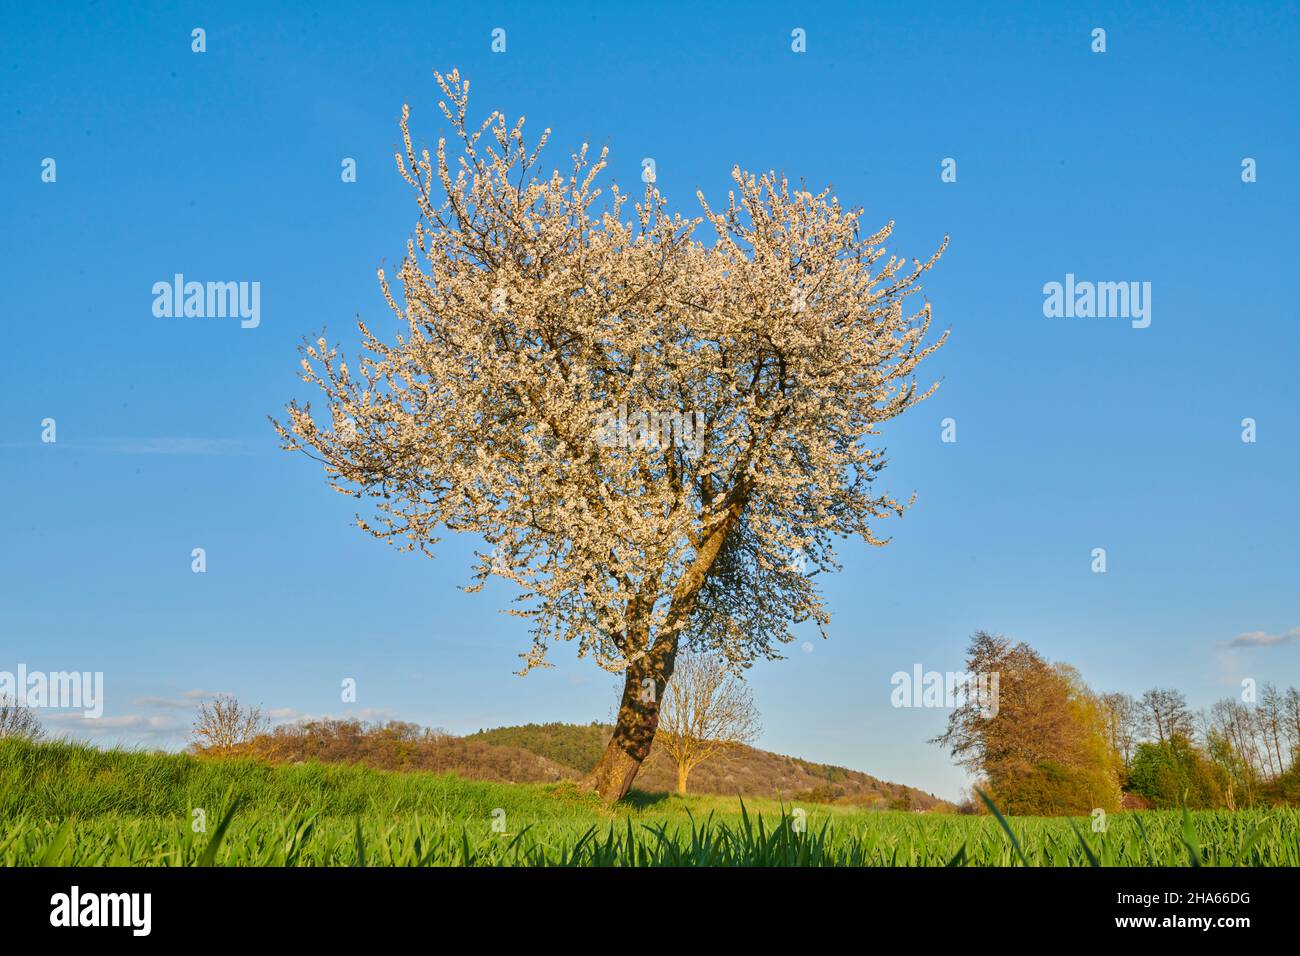 vieux cerisier solitaire en pleine floraison au printemps, cerisier aigre, (prunus cerasus), prairie verte, ciel bleu, bavière, allemagne Banque D'Images